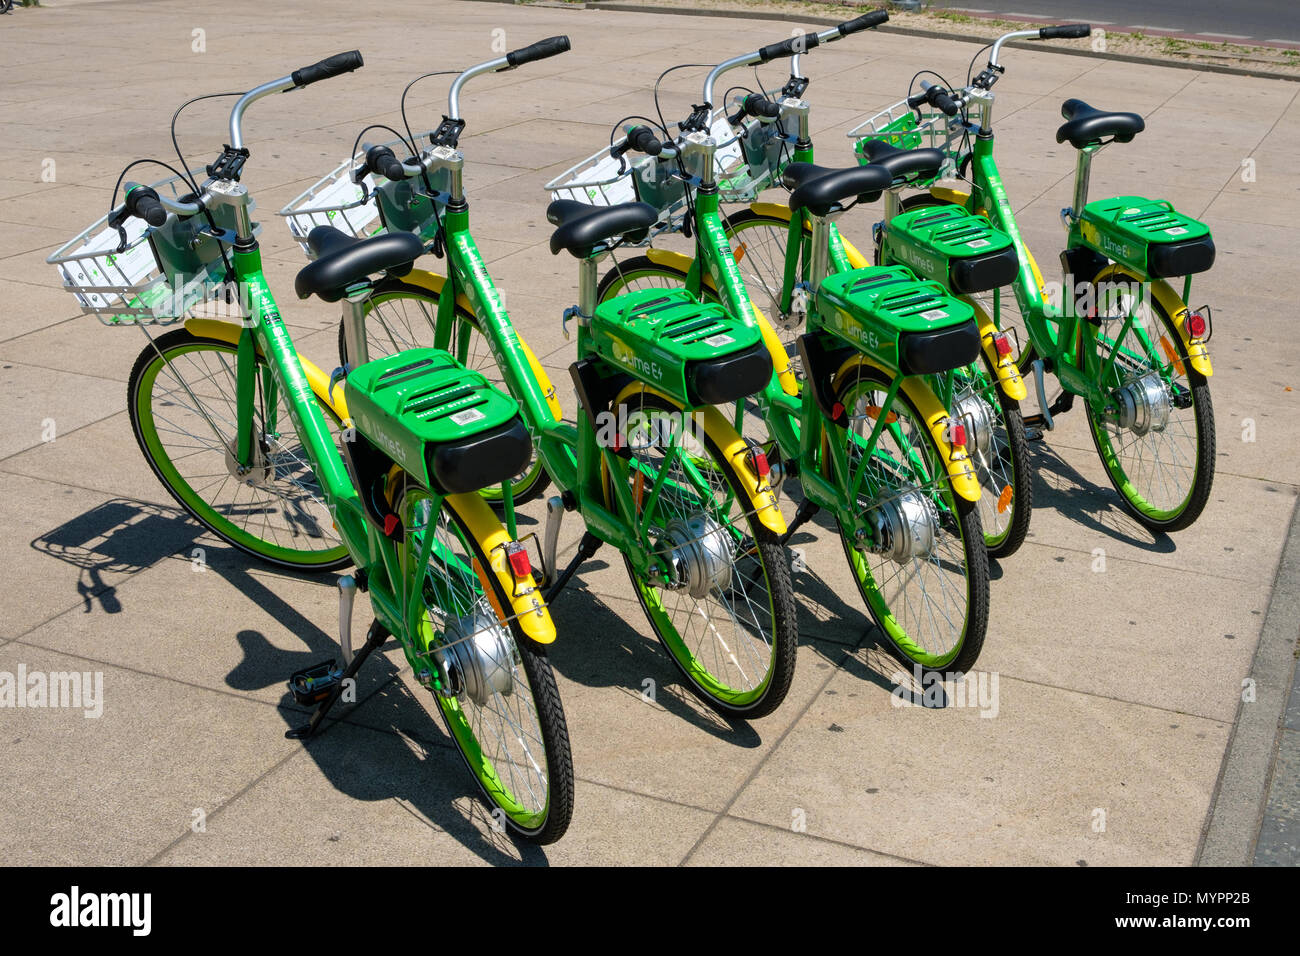 Berlin, Allemagne - juin 2018 : De nombreux vélos électriques de la société LimeBike vélo-partage à Berlin, Allemagne Banque D'Images